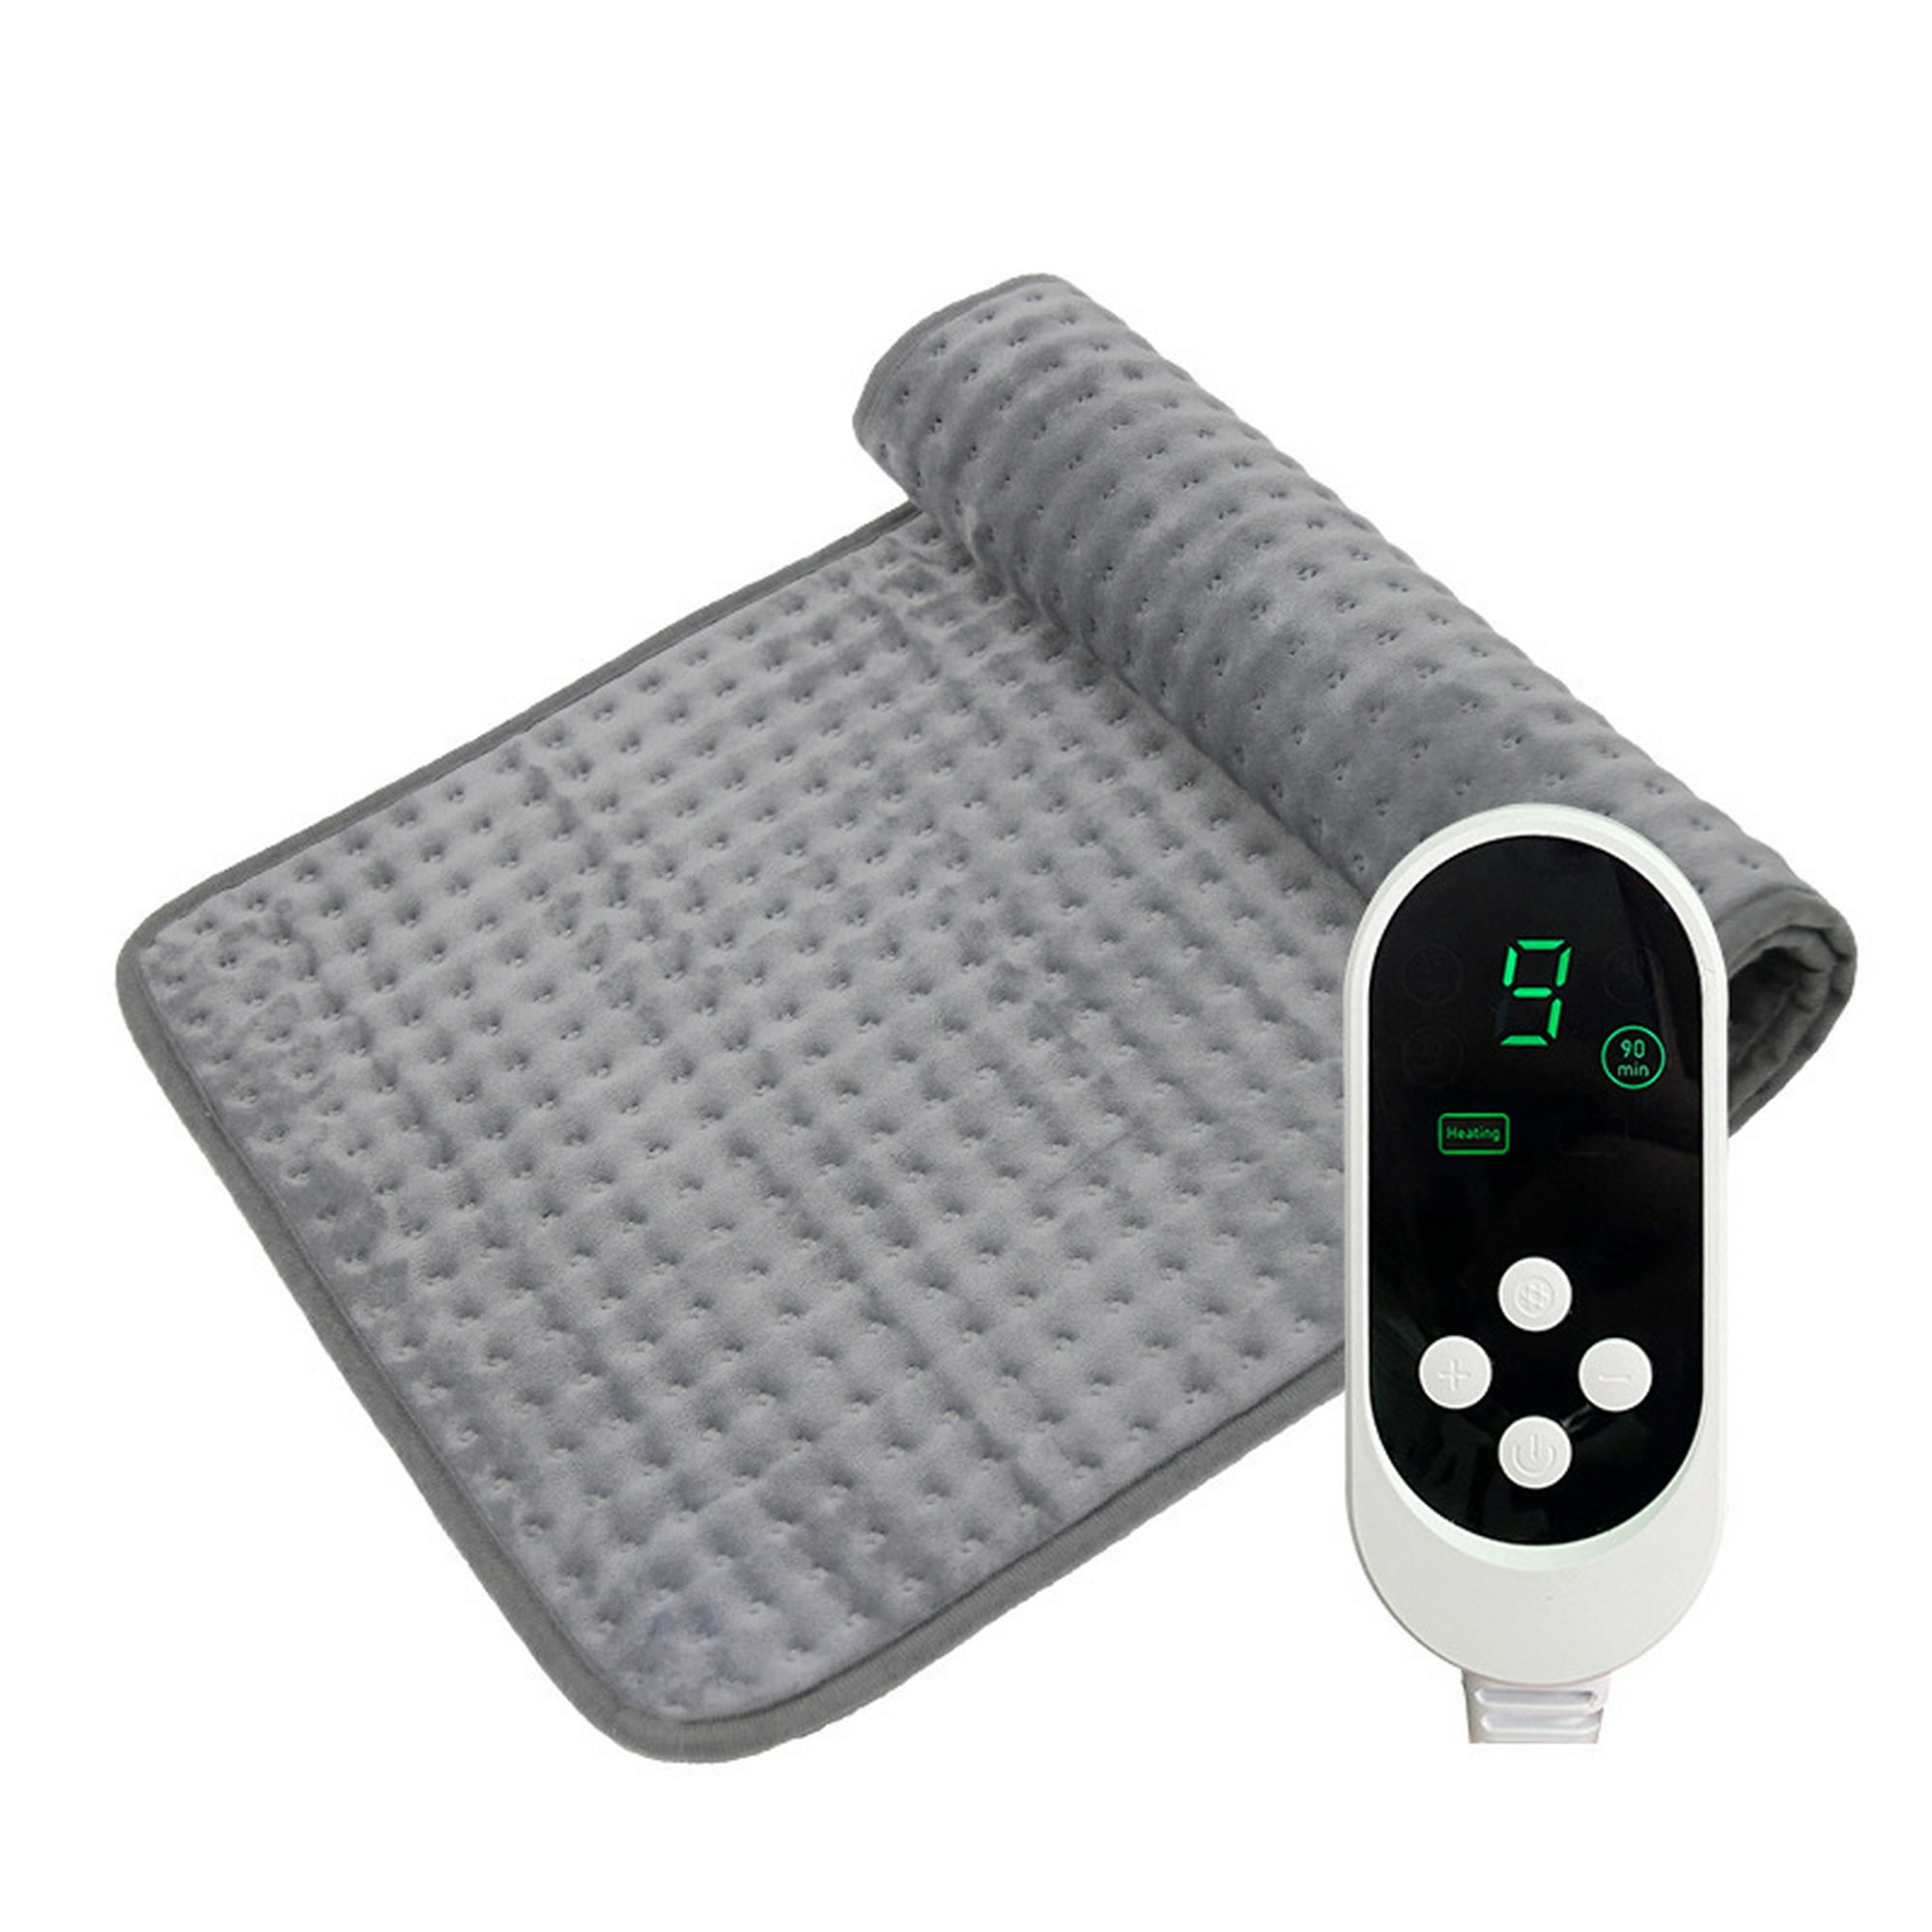  JKMAX Almohadilla térmica para aliviar el dolor de espalda con  apagado automático, 10 ajustes de calor, almohadillas grises para calambres  controlador LED, terapia húmeda y seca, cuello, hombro, lavable a máquina